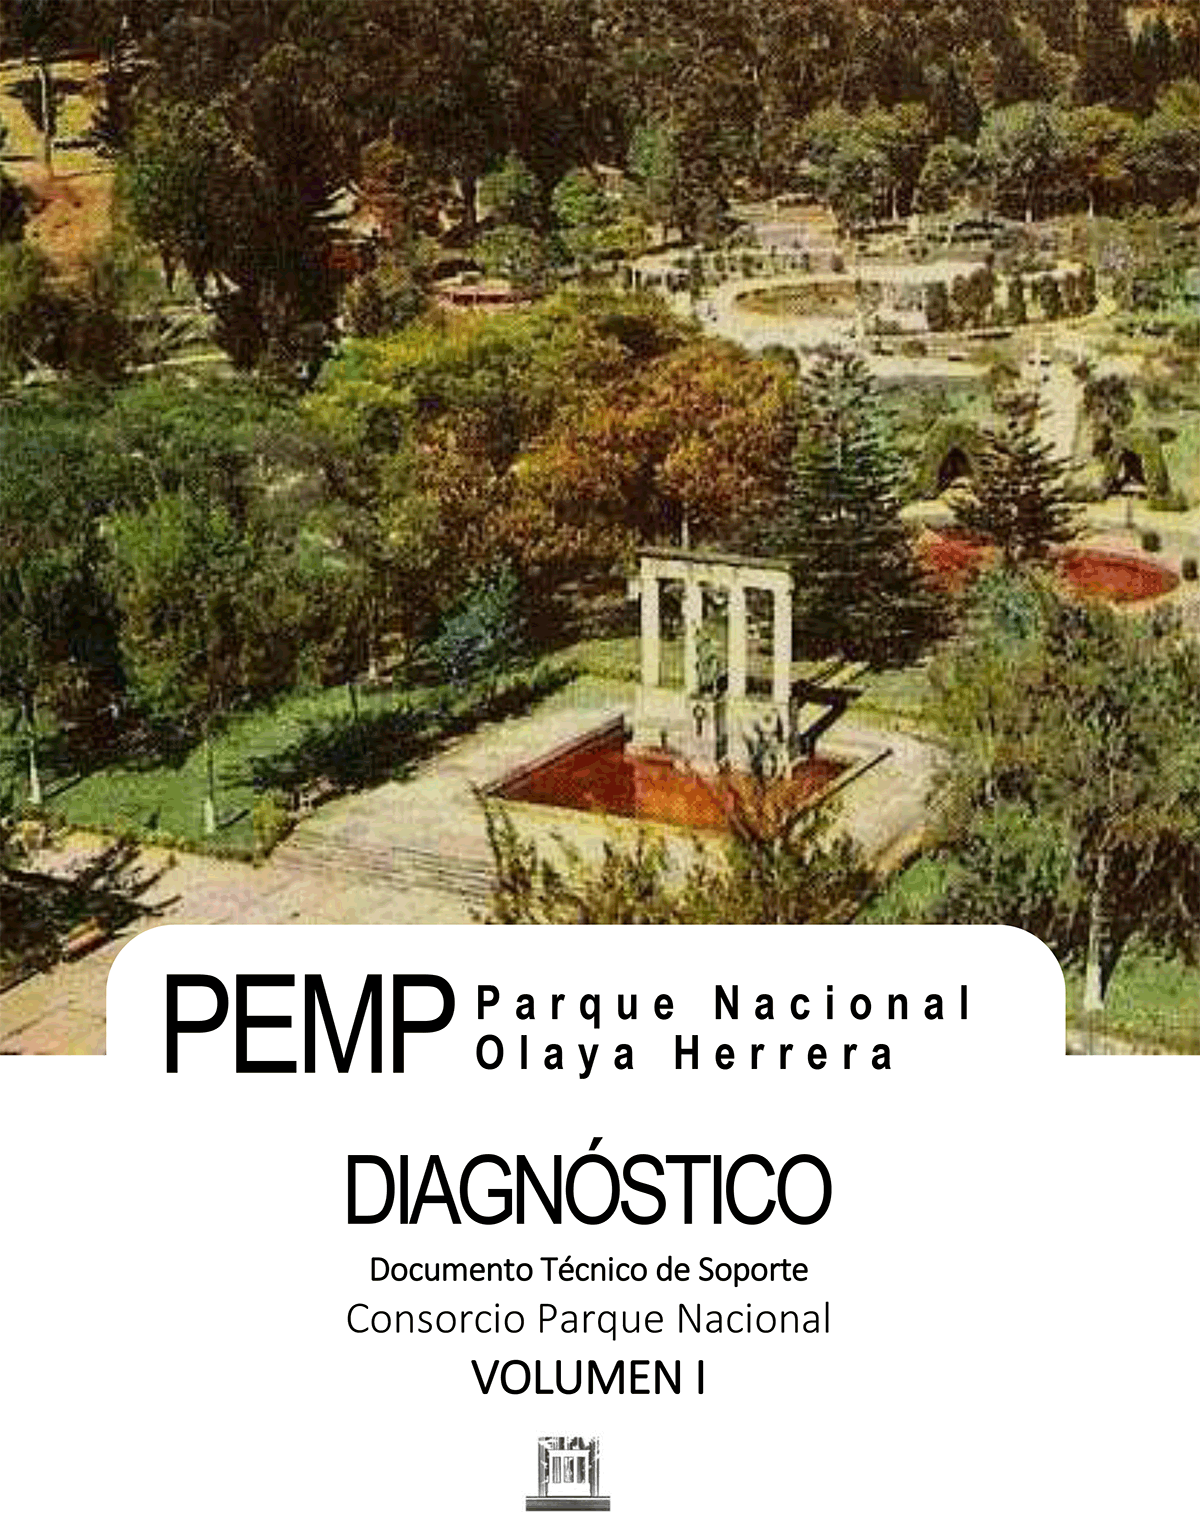 El PEMP para el Parque Nacional Olaya Herrera de la ciudad de Bogotá, se enmarca dentro de los lineamientos definidos por el Ministerio de Cultura y la normatividad adoptada para ellos. El decreto 763 de 2009, el cual reglamentó la ley 1185 de 2008 frente al Patrimonio Cultural de la Nación, de naturaleza material, determinó funciones que deben ser desarrolladas por las entidades territoriales en el ámbito de su jurisdicción respecto de la protección, gestión y divulgación del patrimonio cultural; y con la Resolución 0983 de 2010, se fijan los lineamientos técnicos y administrativos, con el propósito de apoyar la ejecución de la Ley 1185 de 2008 y el Decreto 763 de 2009. Estos elementos jurídicos contienen las regulaciones, definiciones, conceptos, principios y competencias que se aplican a lo largo de este proceso. Es de mencionar que, en los términos contractuales del presente proceso, se hace un esfuerzo especial en el proceso de divulgación y socialización y en la inclusión especial de un experto en paisaje, por lo que la aproximación metodológica involucra dichas variaciones